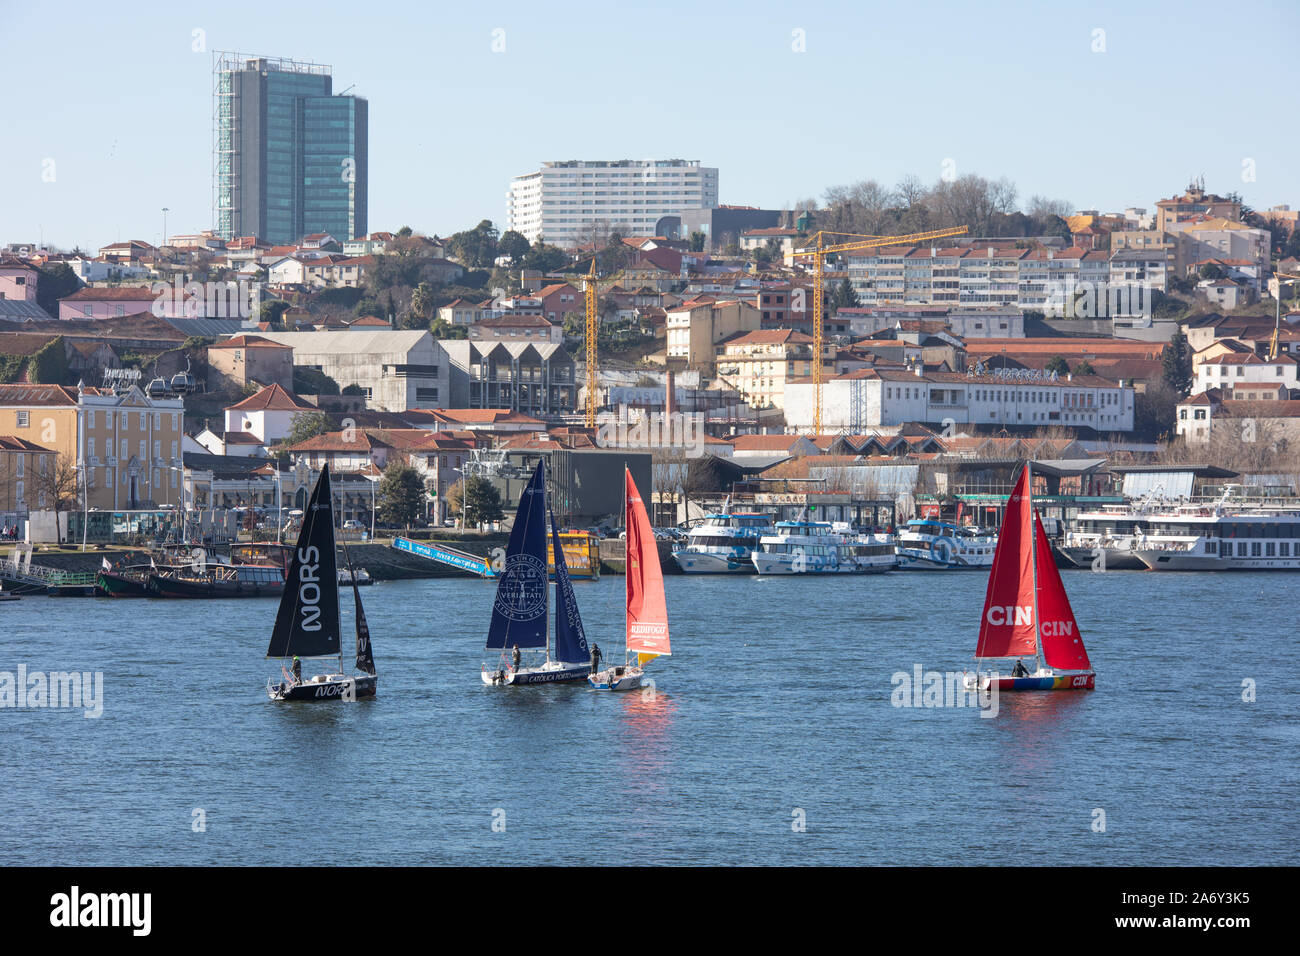 Porto/Portugal - Cityscape, Blick auf die Brücke und Yachten. Saiboats Racing. Regatta. Stockfoto